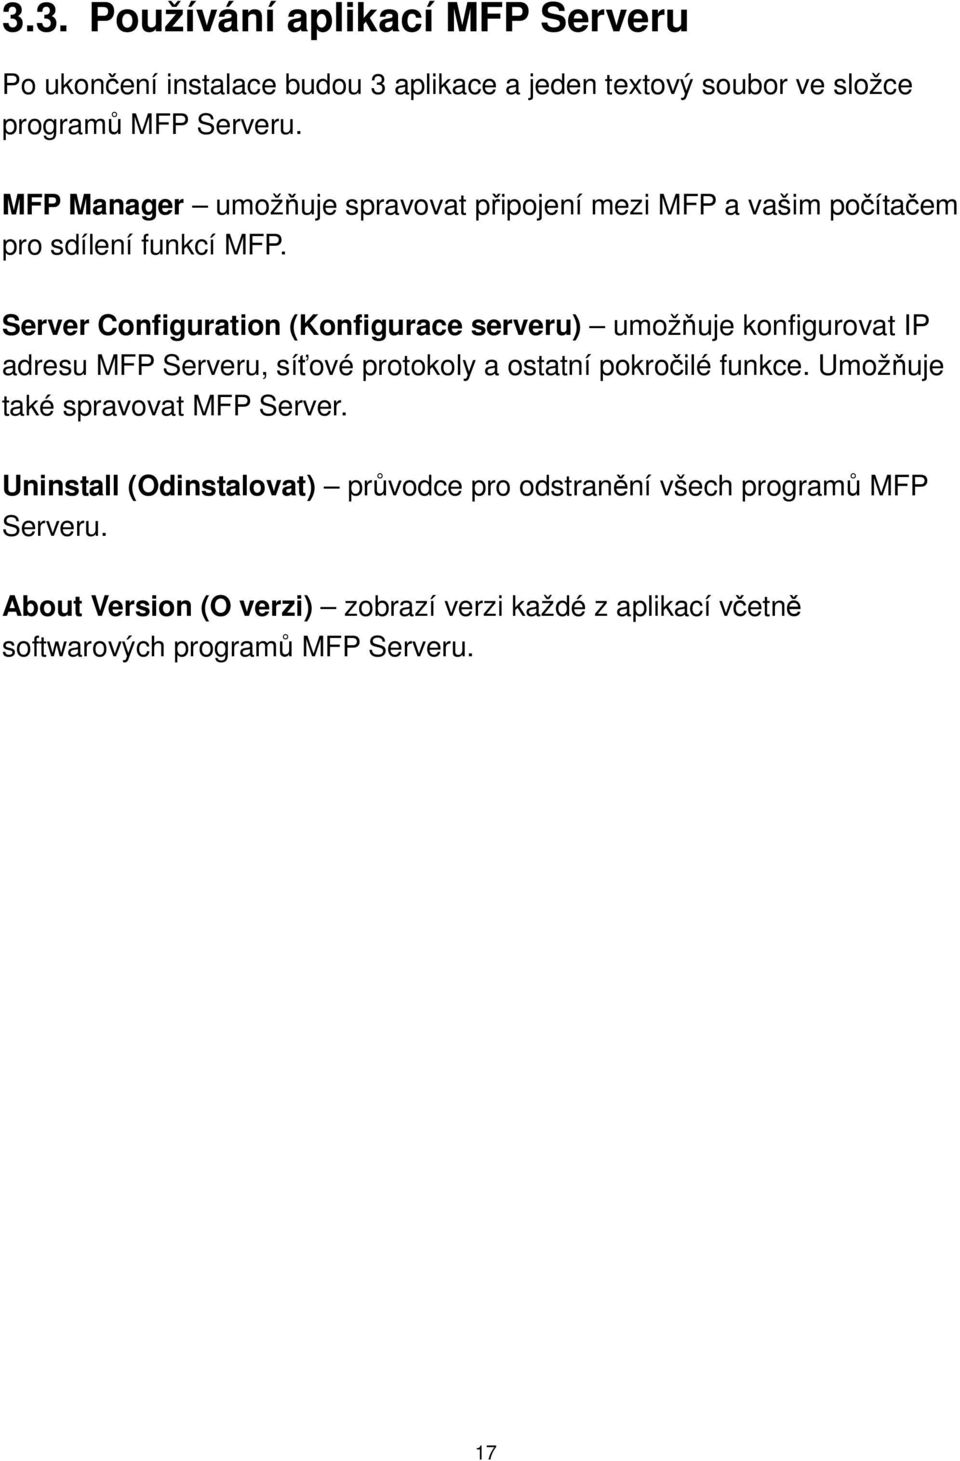 Server Configuration (Konfigurace serveru) umožňuje konfigurovat IP adresu MFP Serveru, síťové protokoly a ostatní pokročilé funkce.